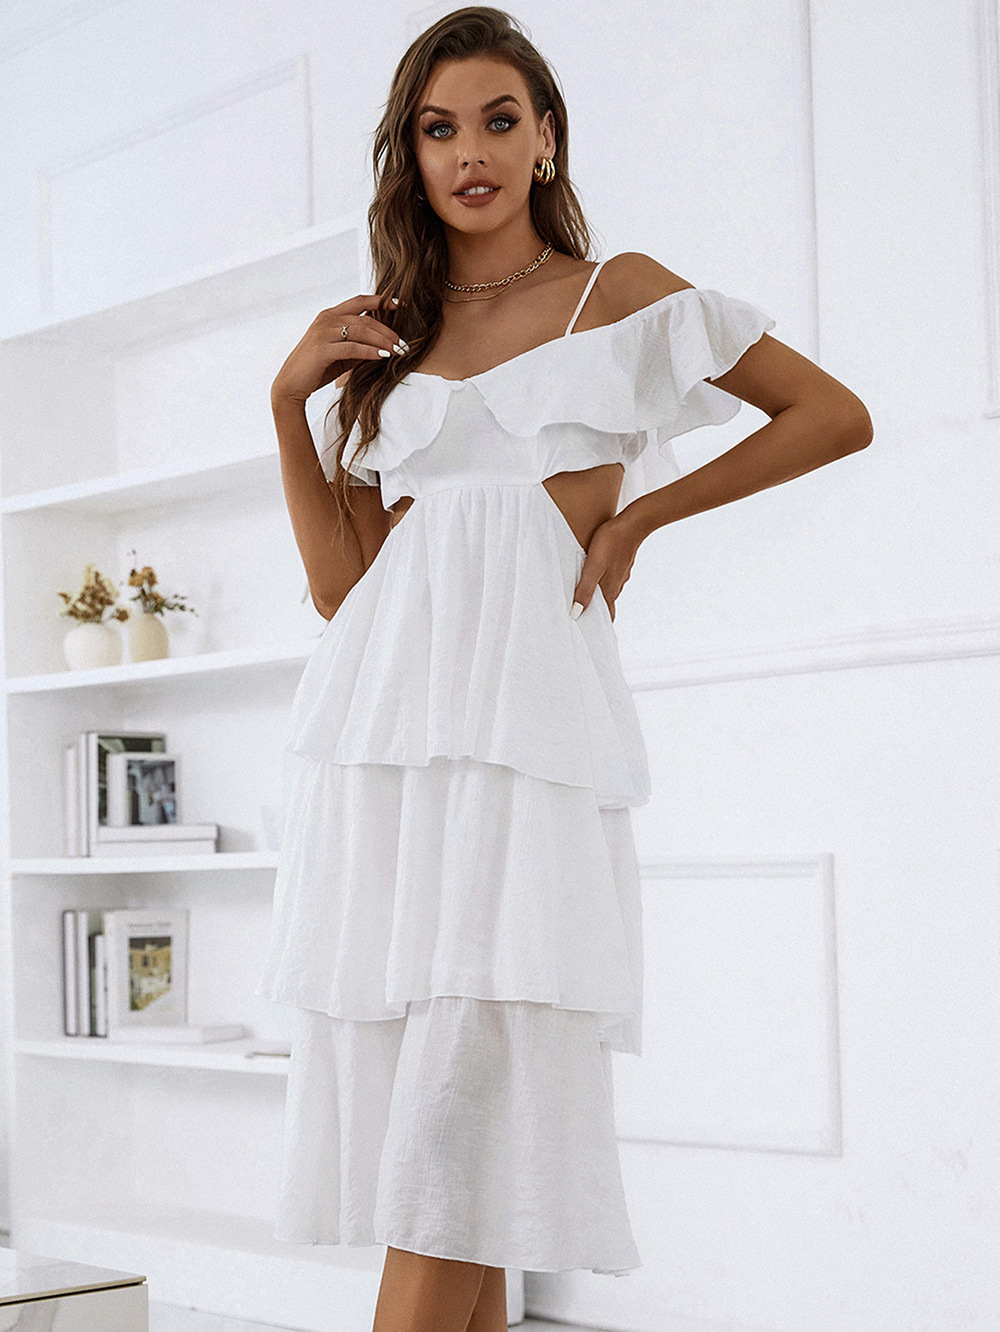 Sling cake halter high waist white summer dress for women